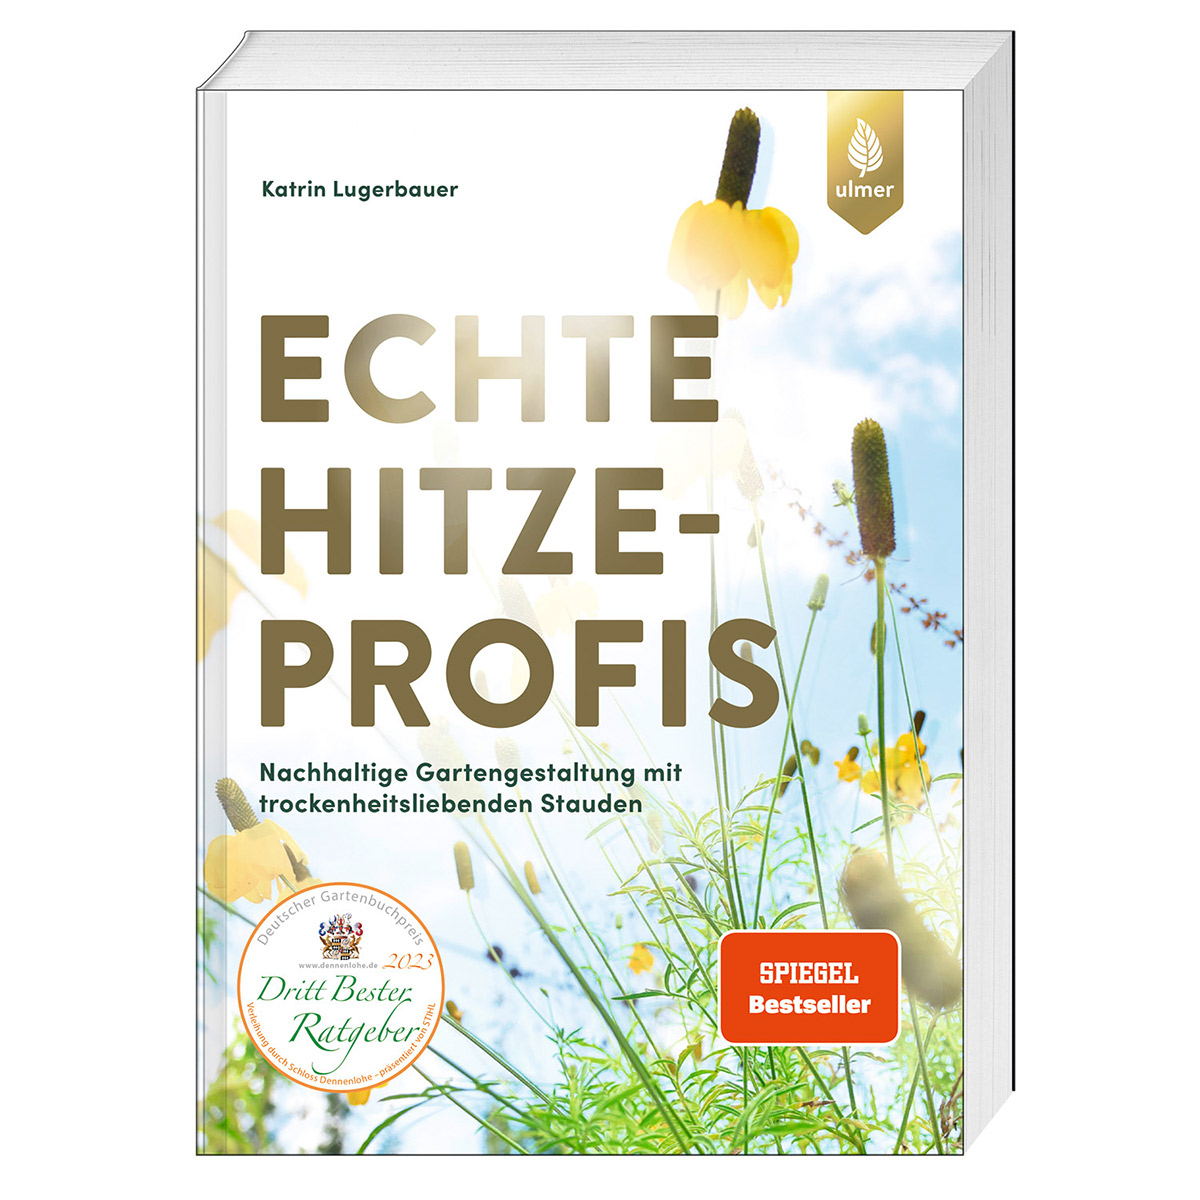 Echte Hitzeprofis von Ulmer Eugen Verlag